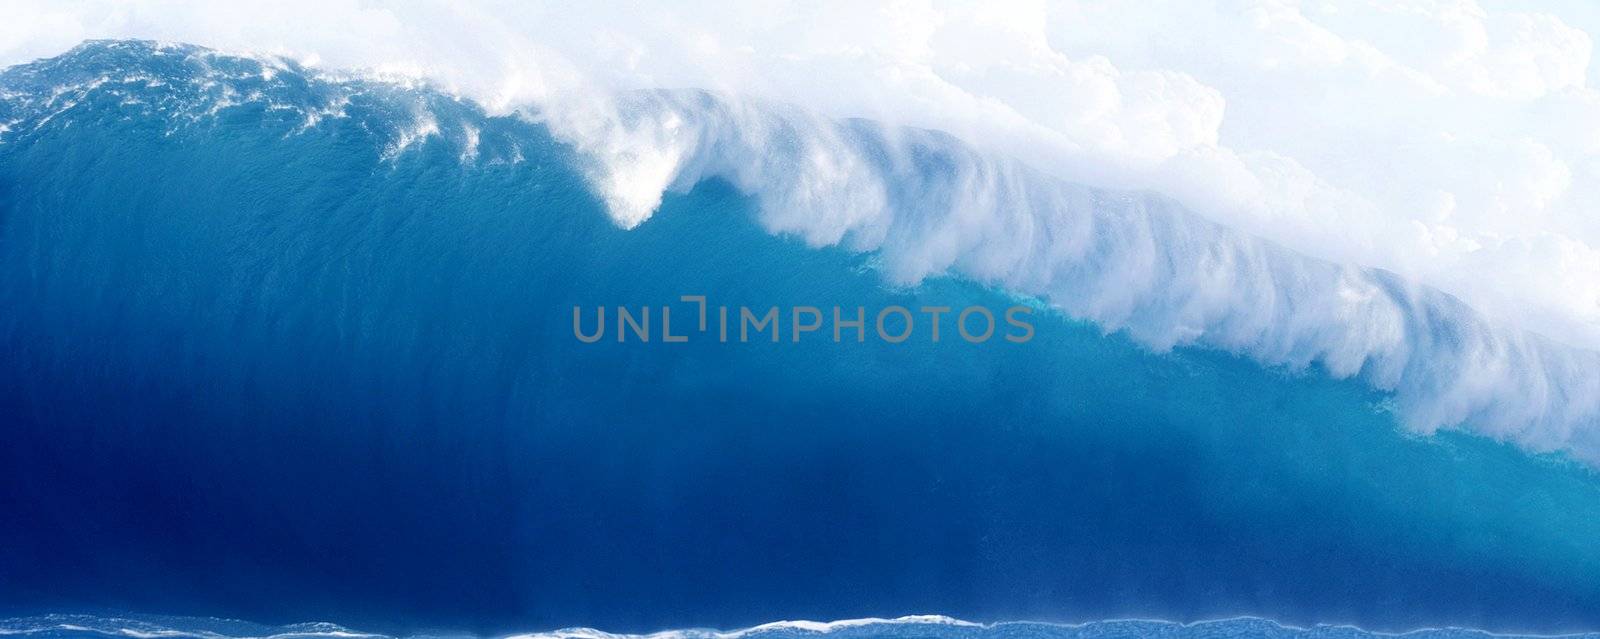 Large Blue Surfing Wave Breaks in the Ocean by ozaiachin